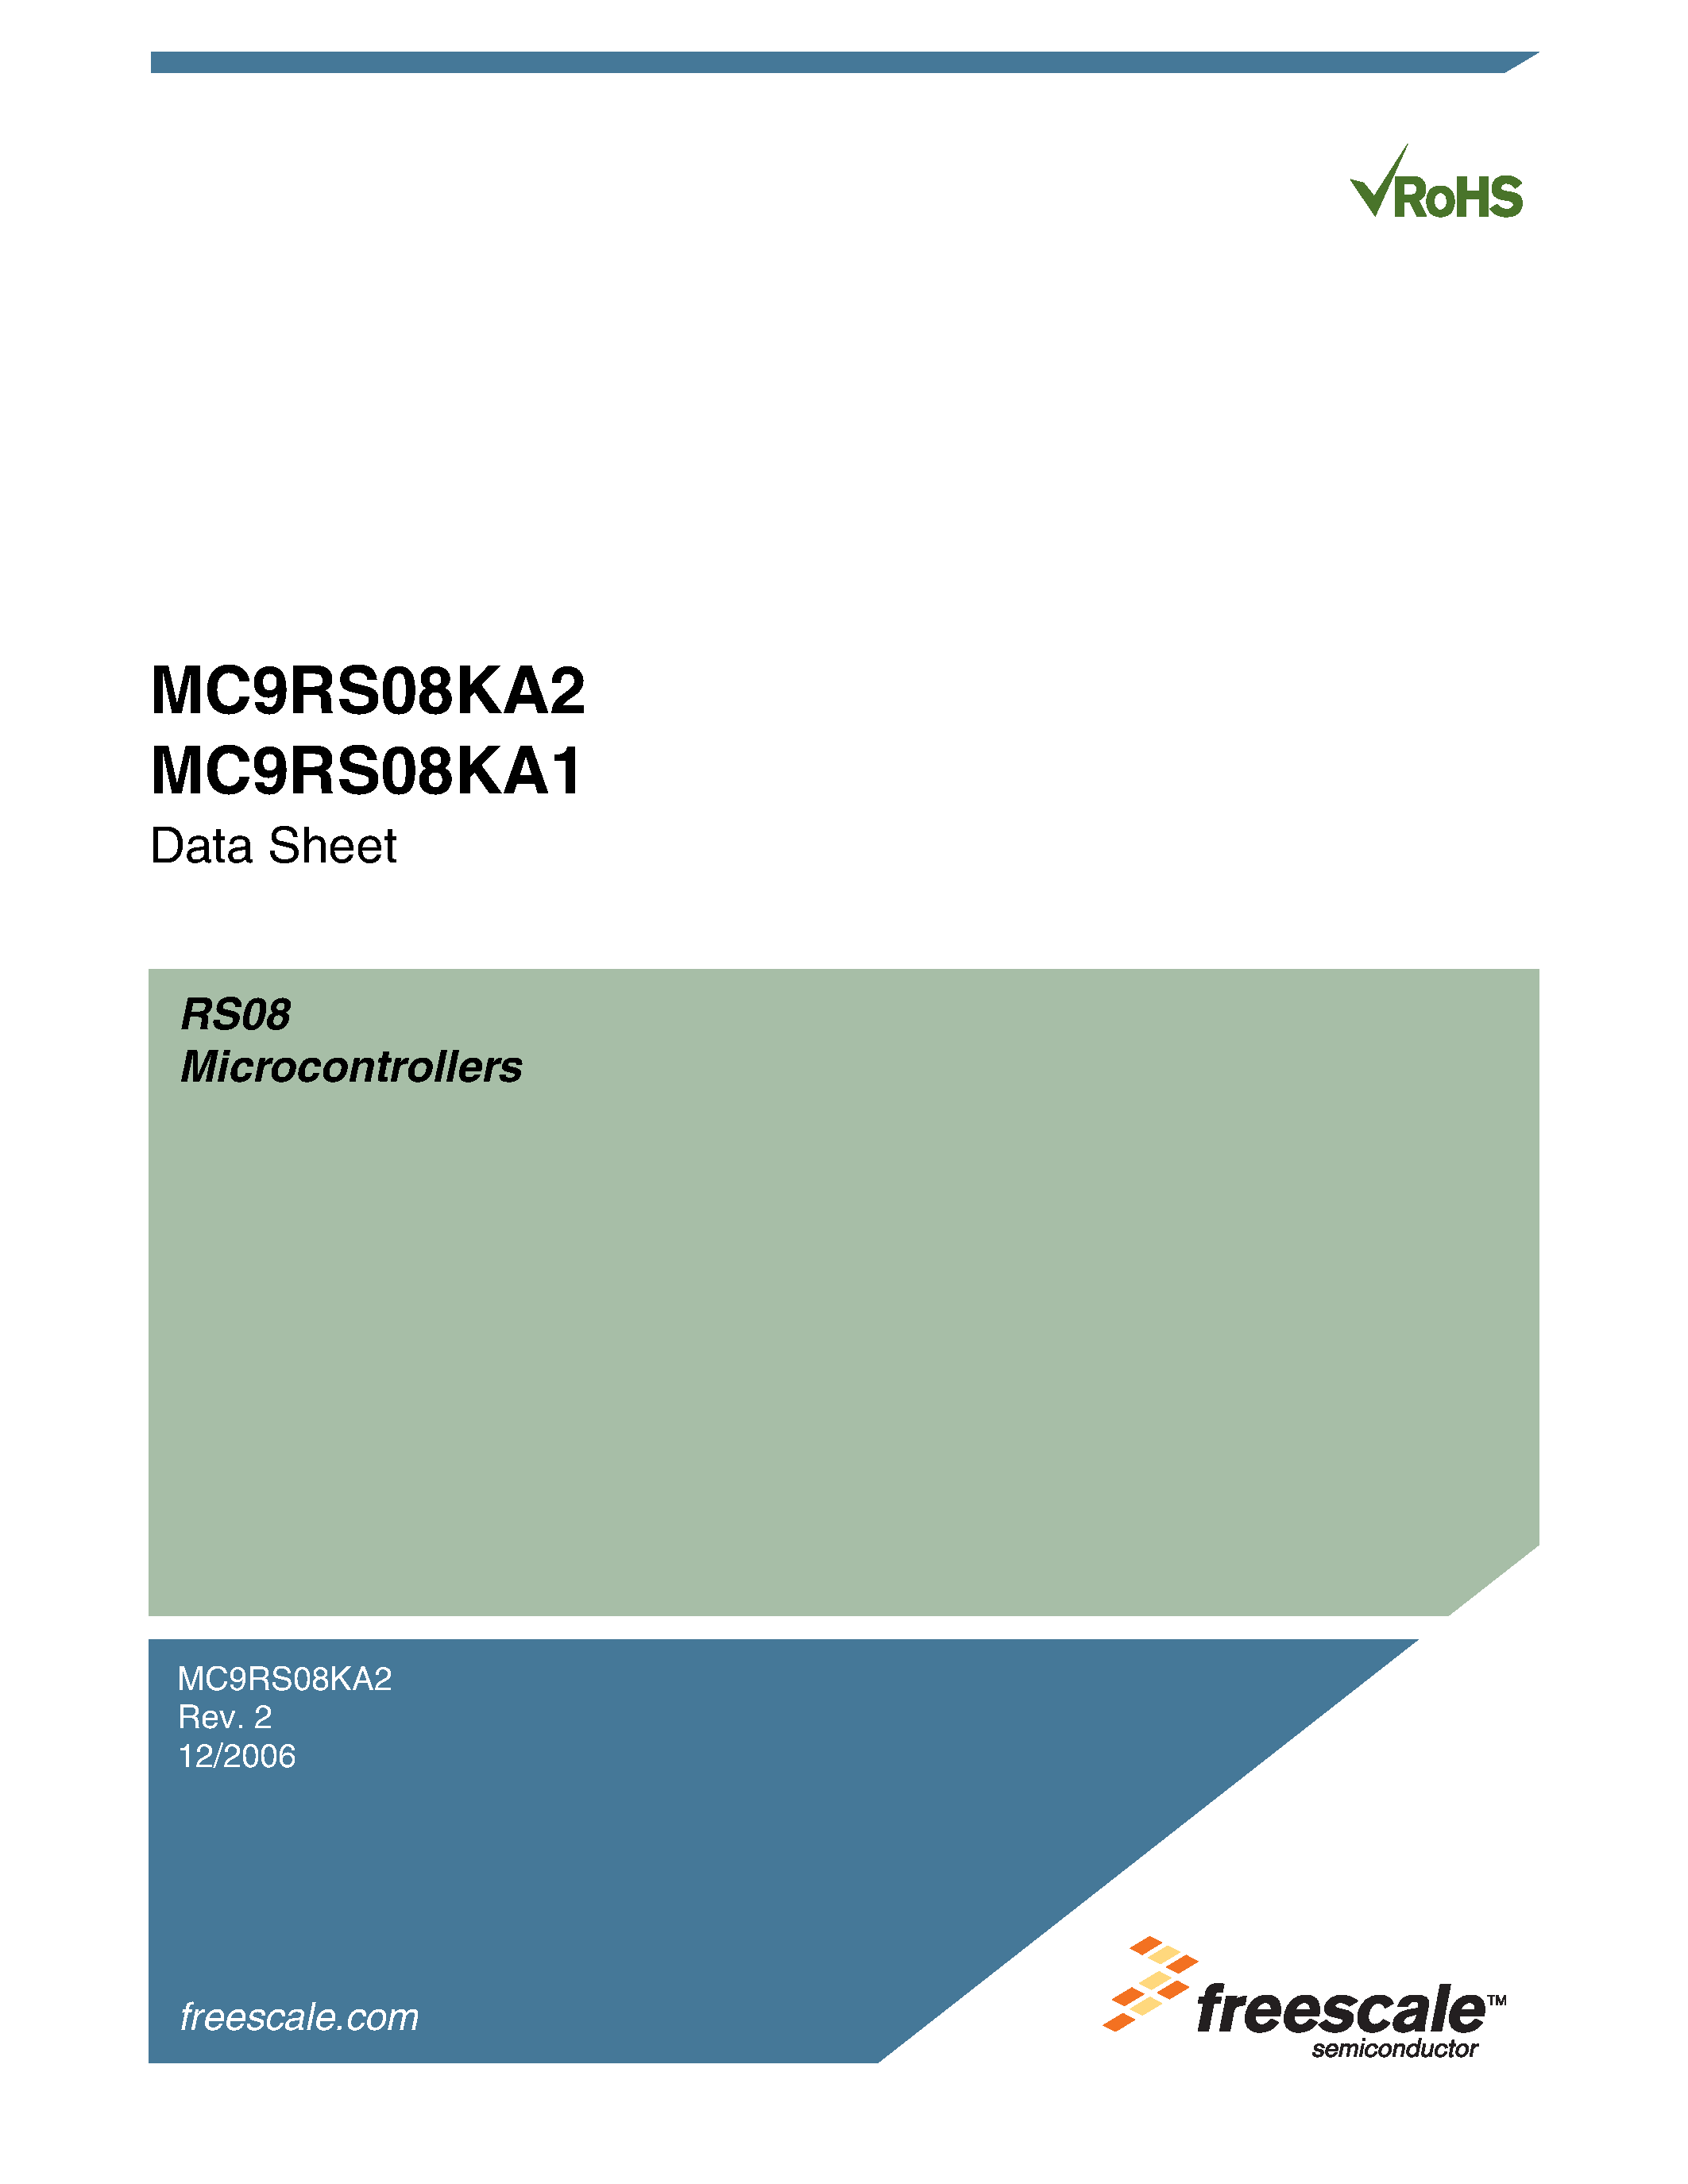 Datasheet MC9RS08KA1 - (MC9RS08KA1 / MC9RS08KA2) Microcontrollers page 1